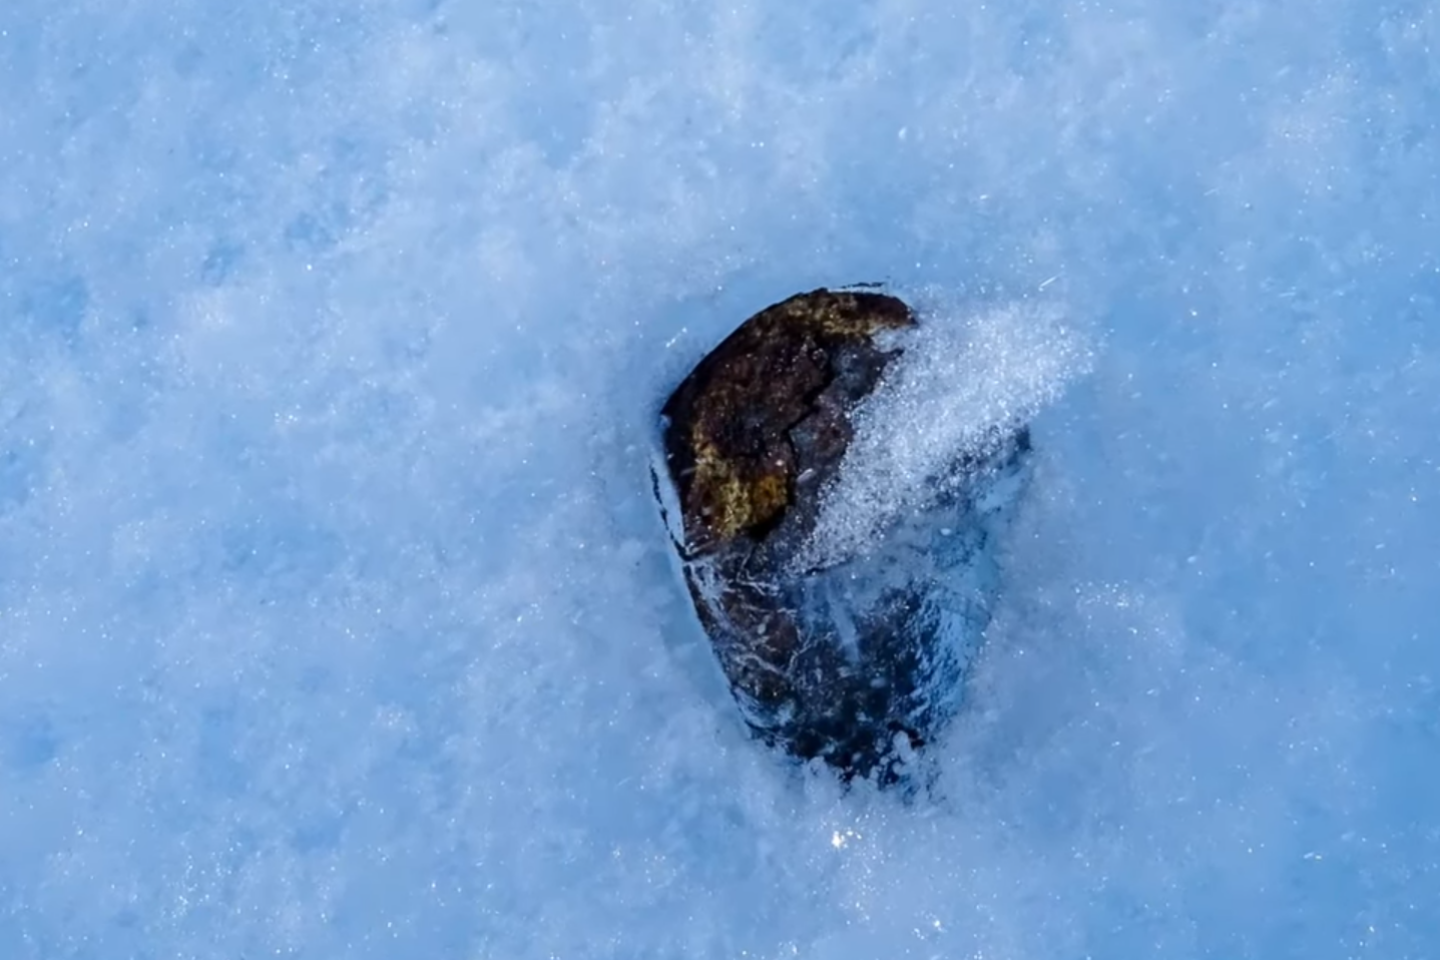 L’importante collecte de météorites en Antarctique menacée par le changement climatique